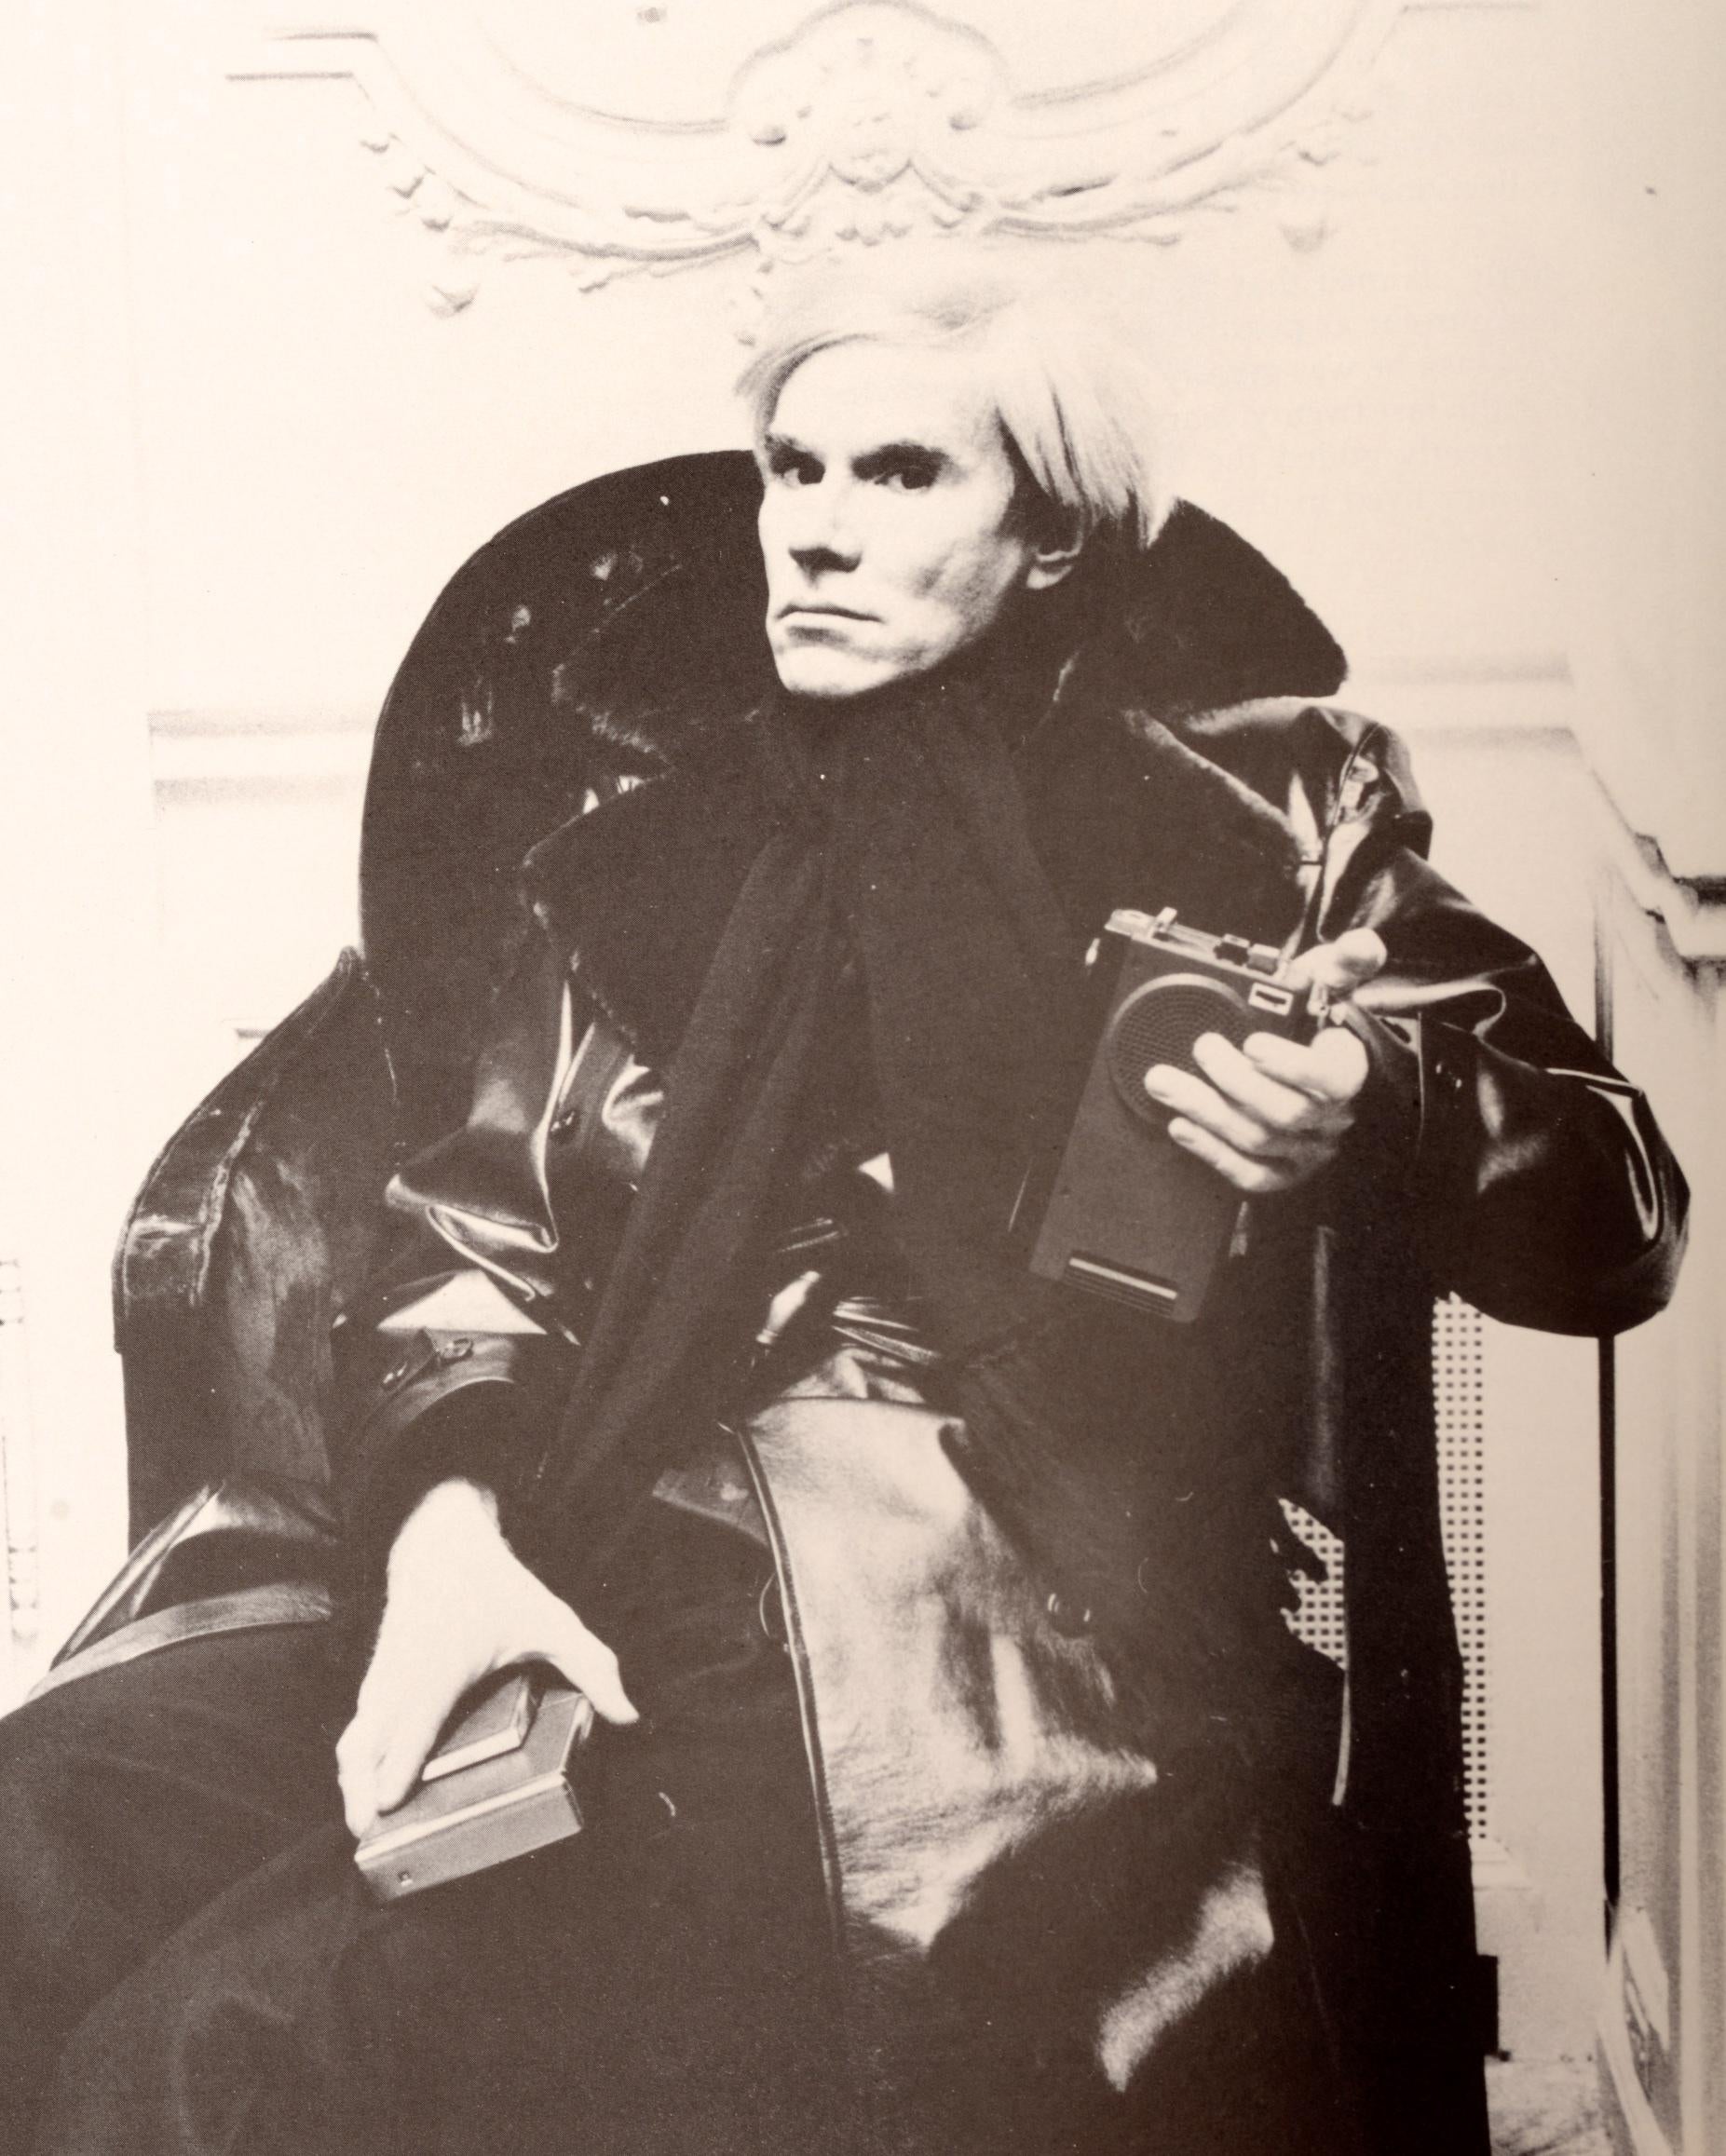 Sotheby's : The Andy Warhol Collection Americana and European and American Paintings, Drawings and Prints, Vol. V, vendredi 29 et samedi 30 avril 1988. 517 lots photographiés en couleur et en noir et blanc, chaque lot est entièrement décrit. 
NPT